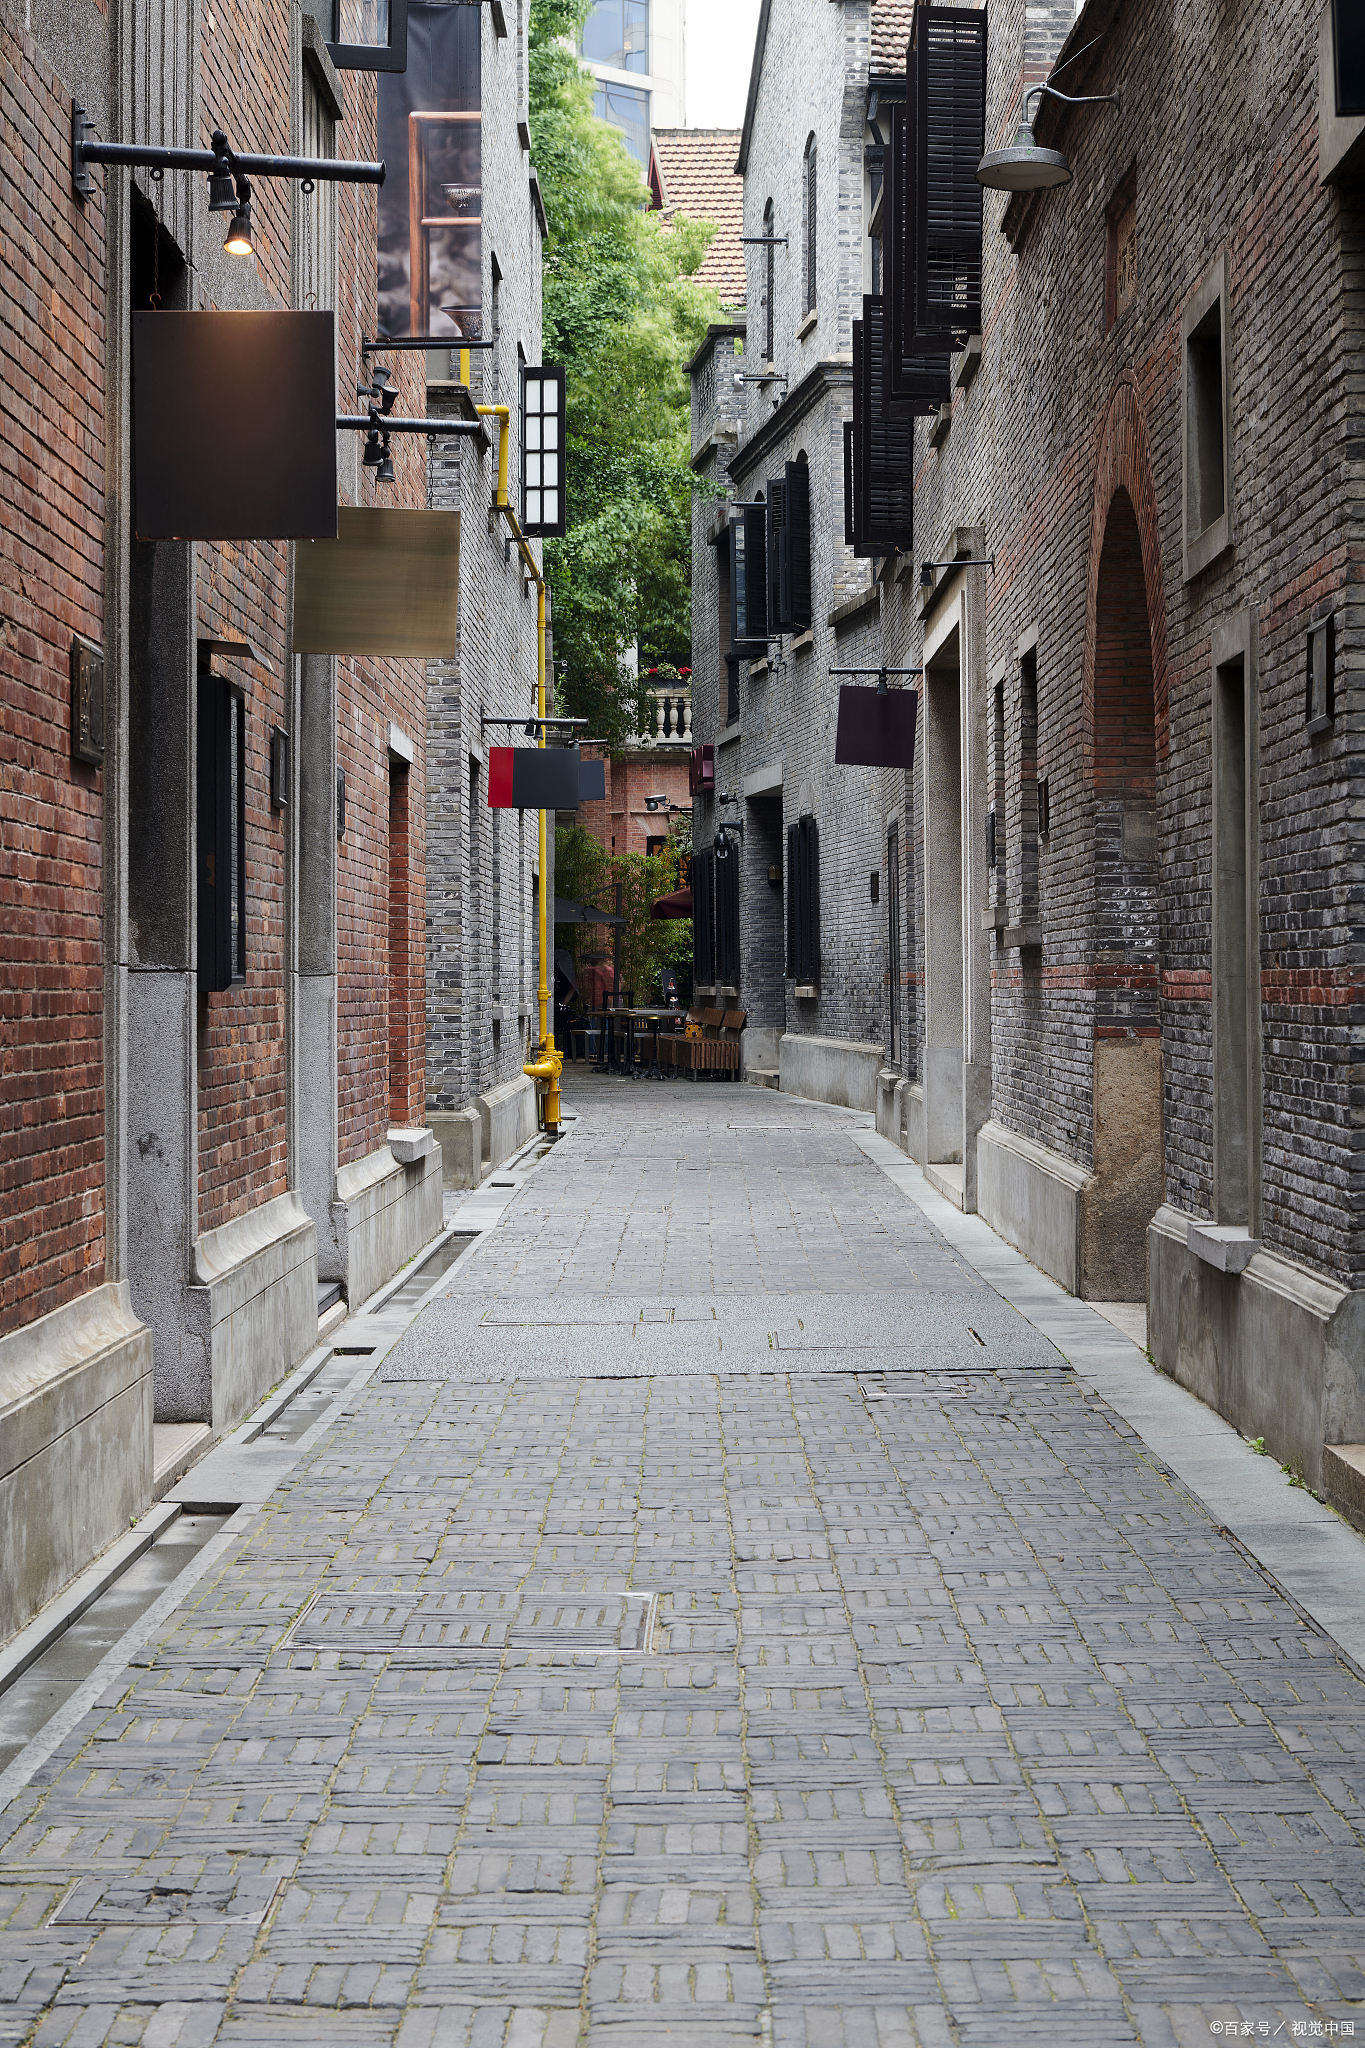 古街小巷,石板路蜿蜒;白墙黛瓦,历史厚重